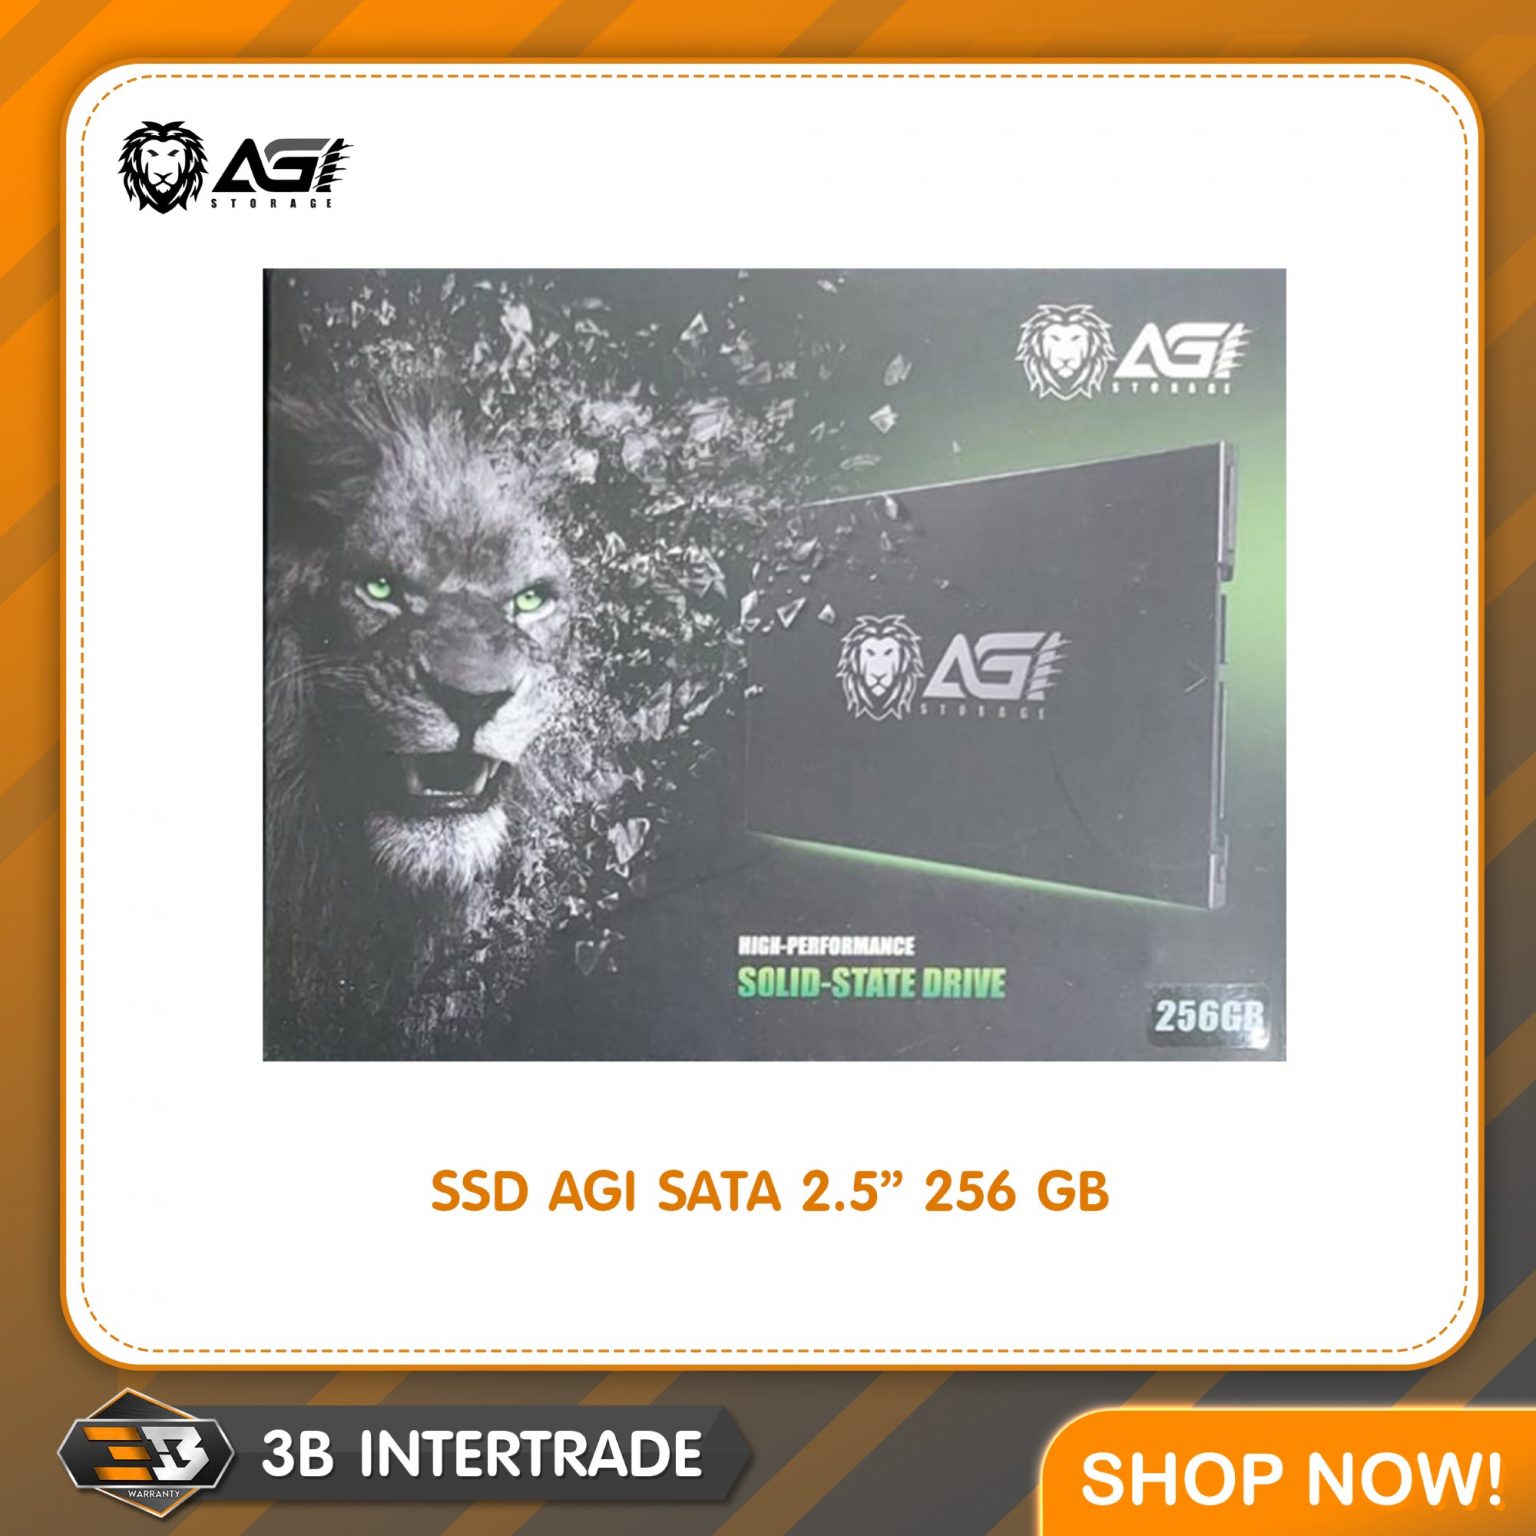 SSD AGI SATA 256GB 2.5″ (AGI256G06AI138)